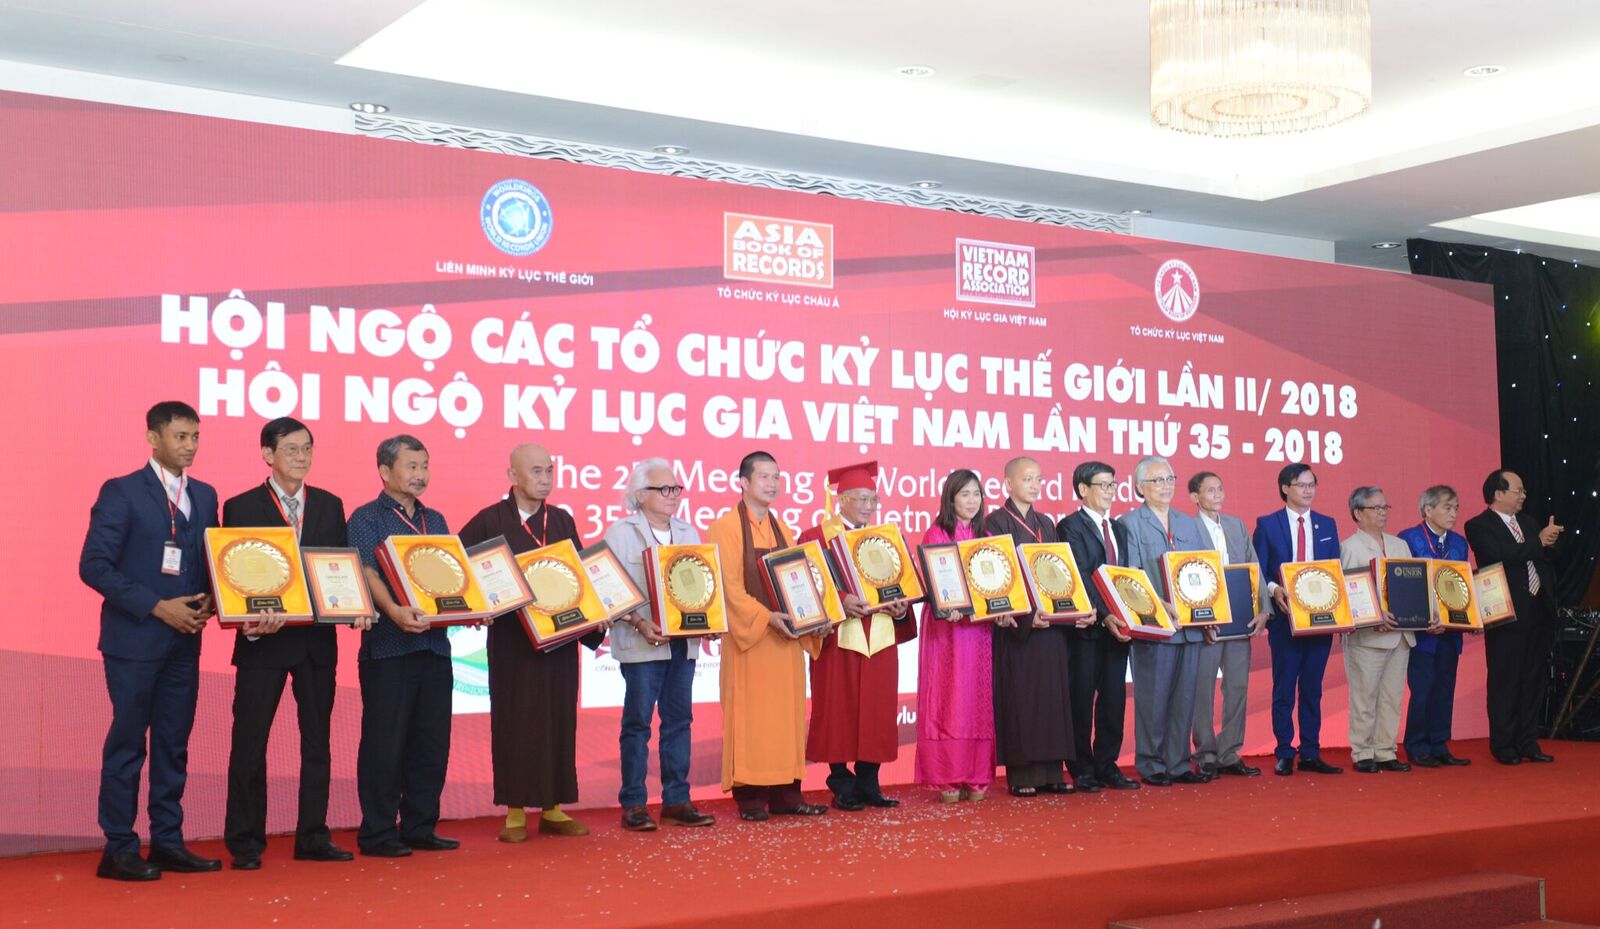 Trao tặng Đĩa vàng đến 16 cá nhân của Việt Nam là các vị trong Ban Lãnh đạo Kỷ lục Việt Nam và các Kỷ lục gia, Đại diện lãnh đạo cá nhân, Đơn vị sở hữu Kỷ lục tiêu biểu của Việt Nam.